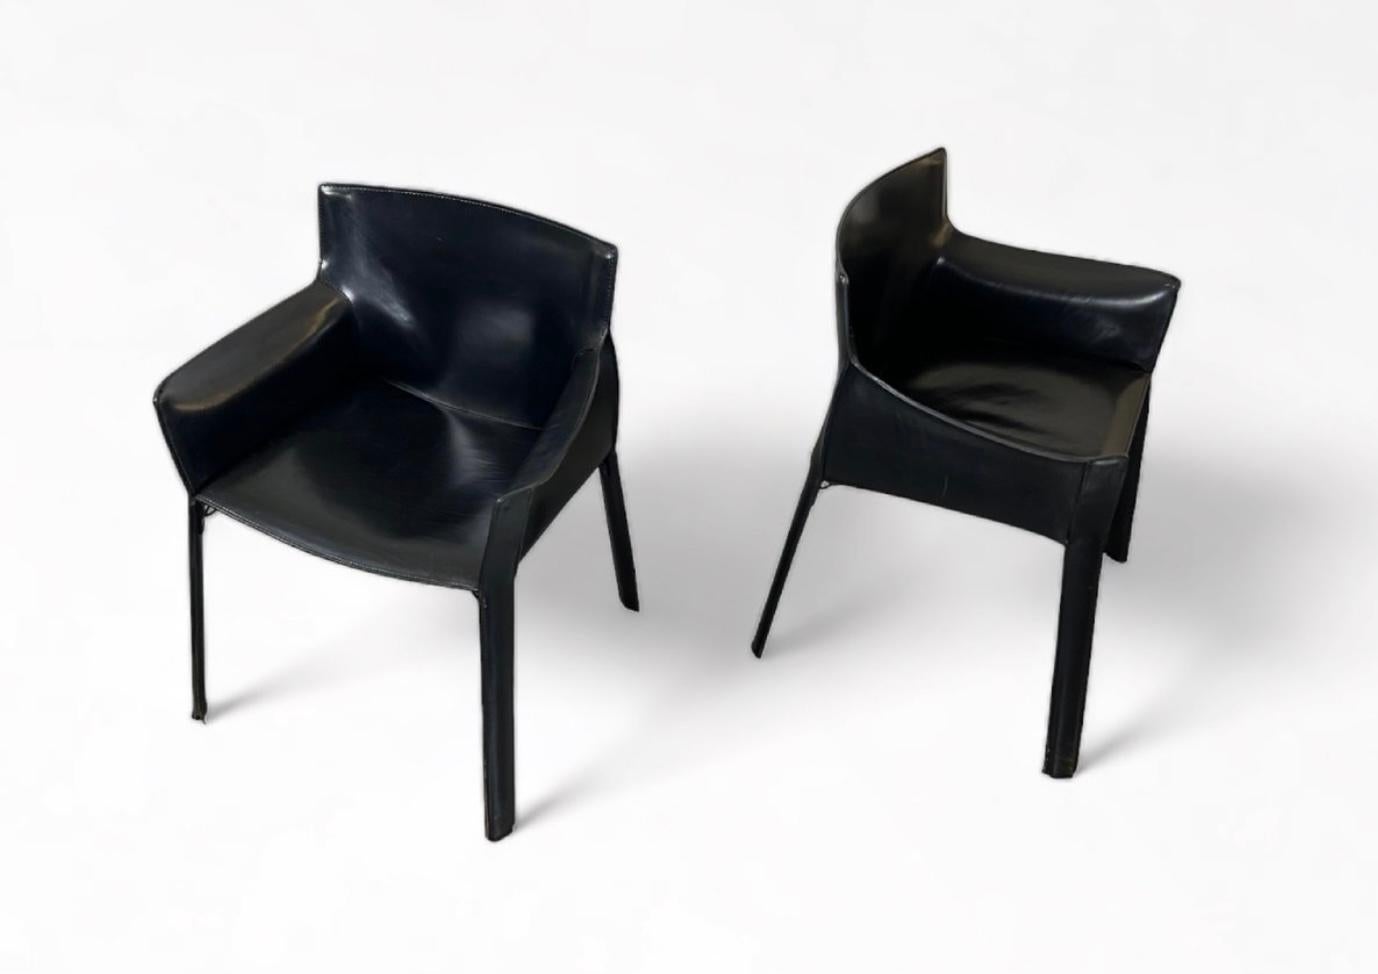 Mid Century Modern Giancarlo Vegni entwarf ein Paar P-90 Sessel, schwarzes Sattelleder auf Metallgestell, für Fasem, Italien, 1970er Jahre. Ein Zeitgenosse von Mario Bellinis CAB 413 Sesseln für Cassina.

Diese Sessel sind aus hochwertigem,